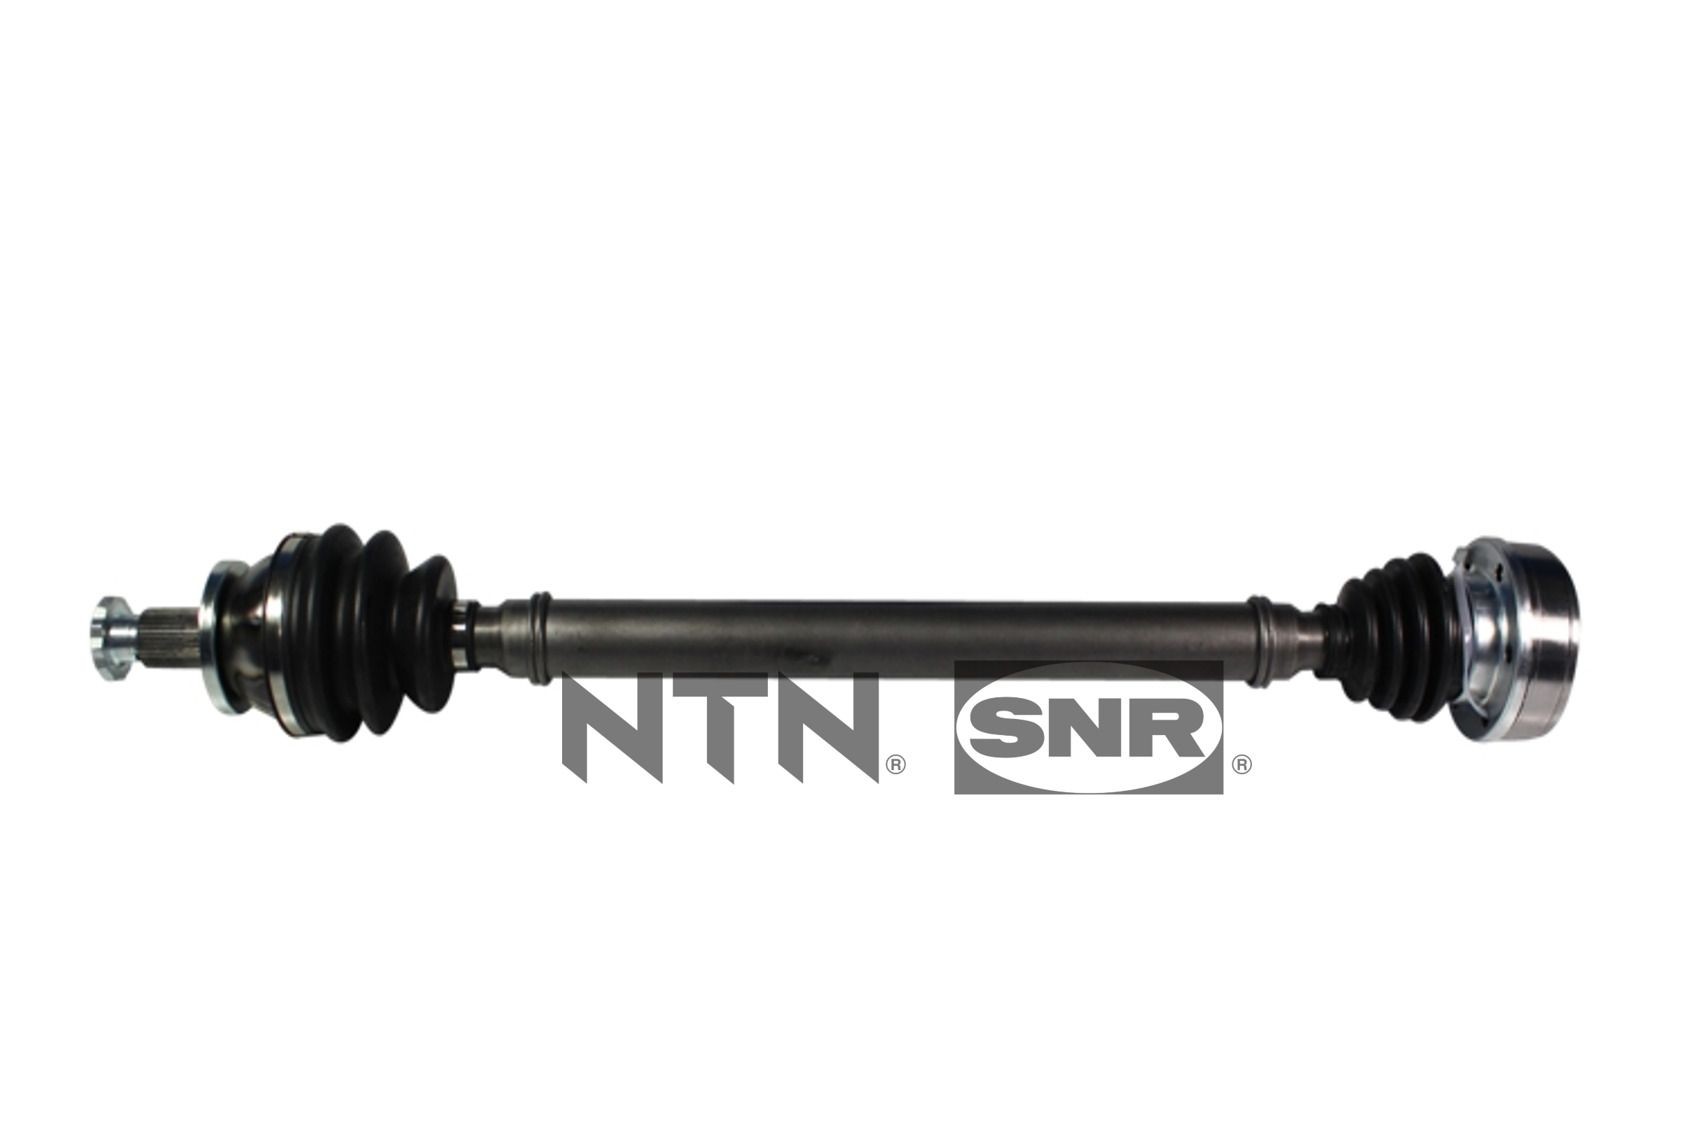 SNR DK54.018 Volkswagen POLO 2015 CV shaft